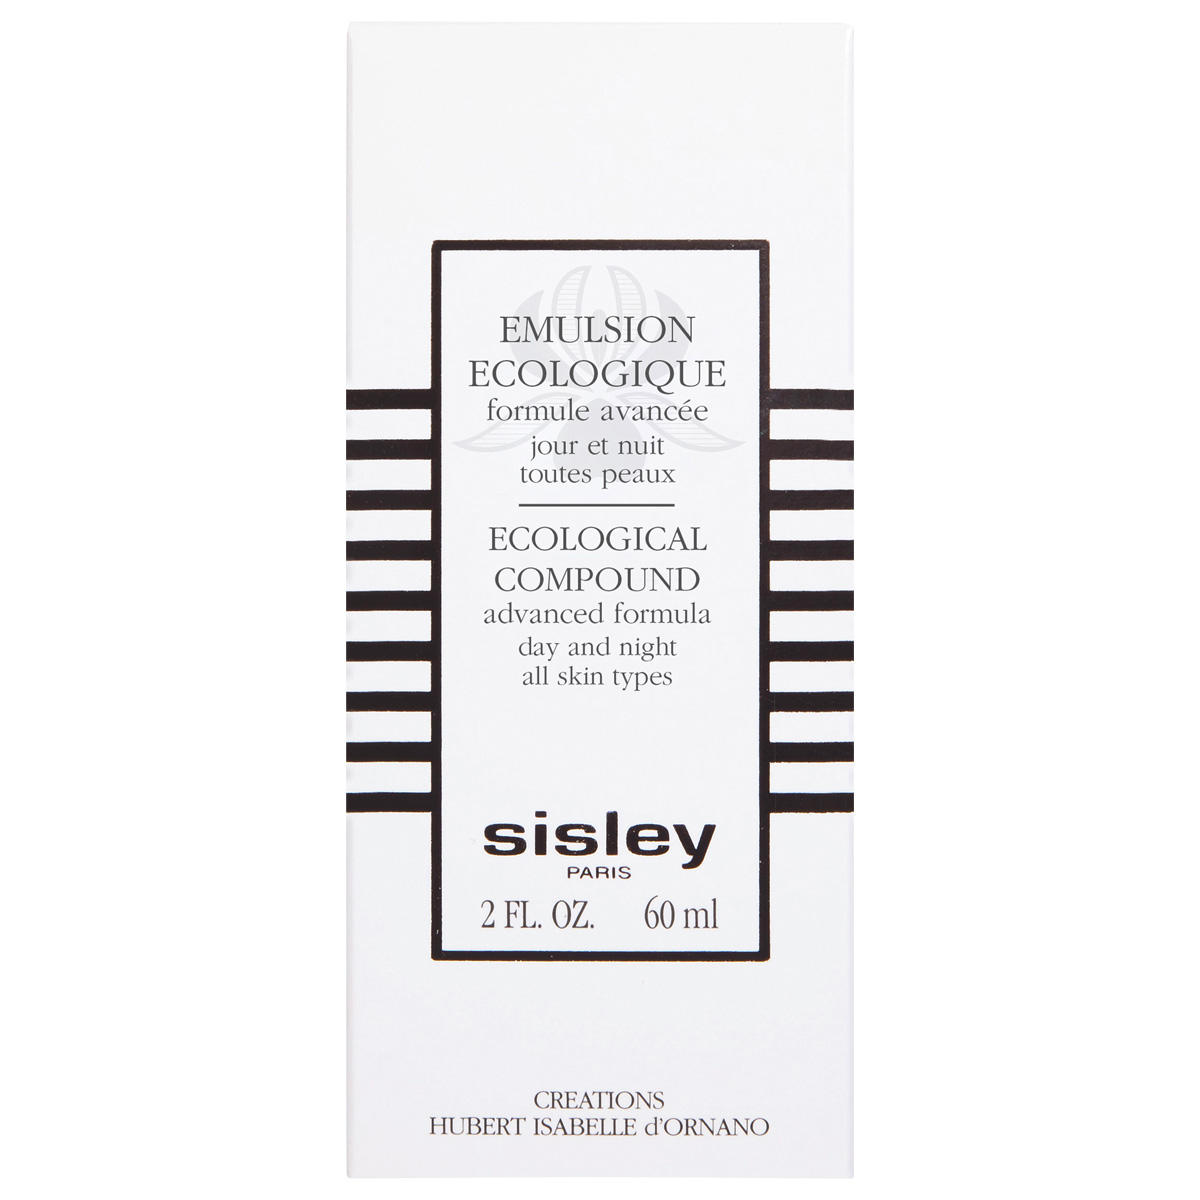 Sisley Paris Emulsion Ecologique formule avancée 60 ml - 2